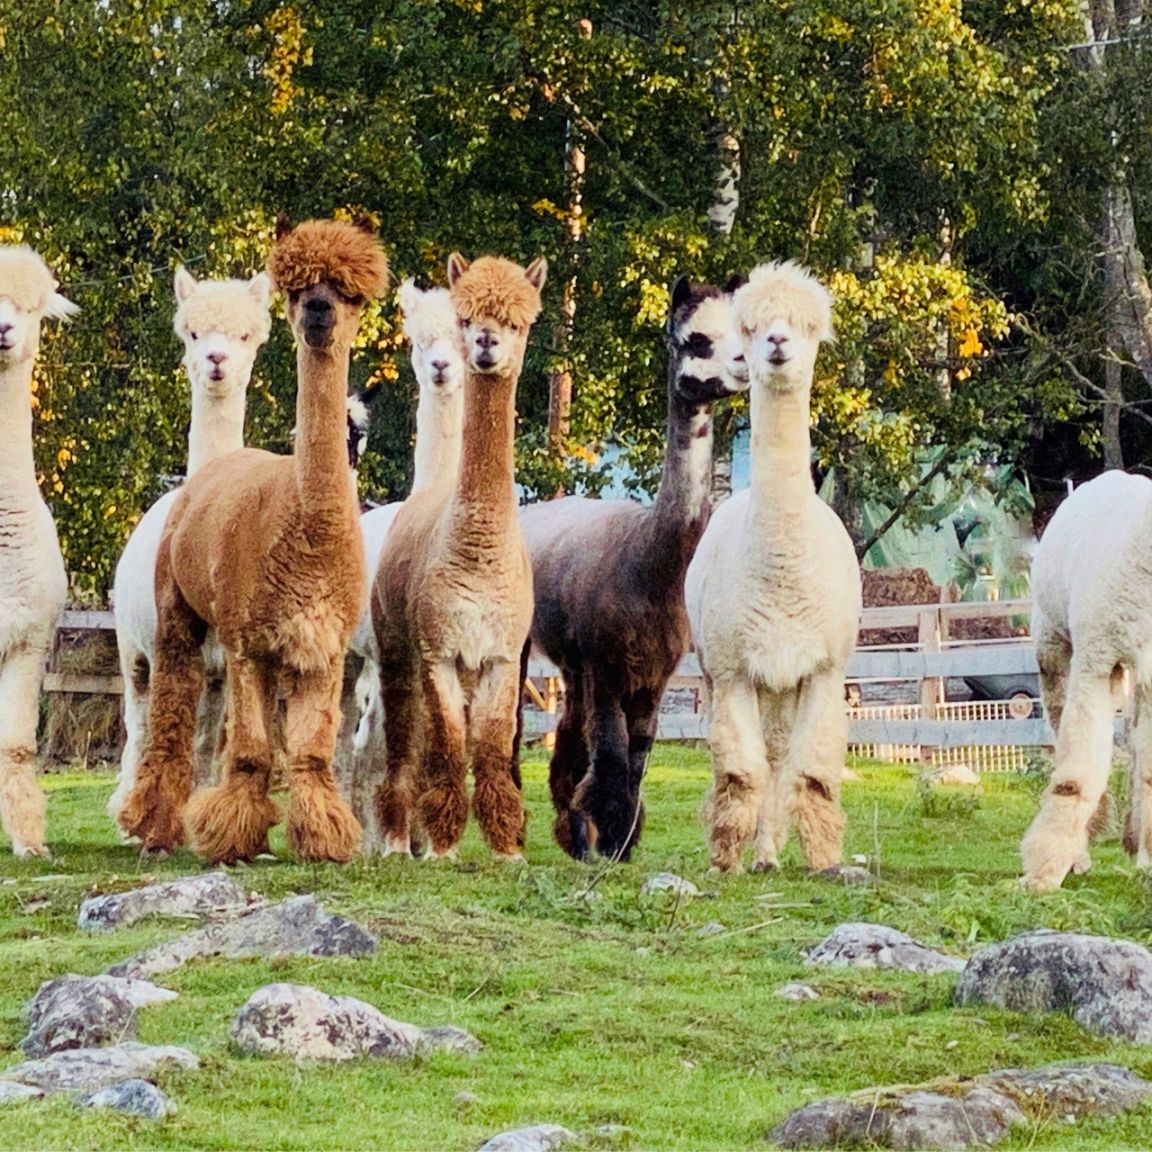 Visitvastmanland kolmstahojden alpacka toppbild